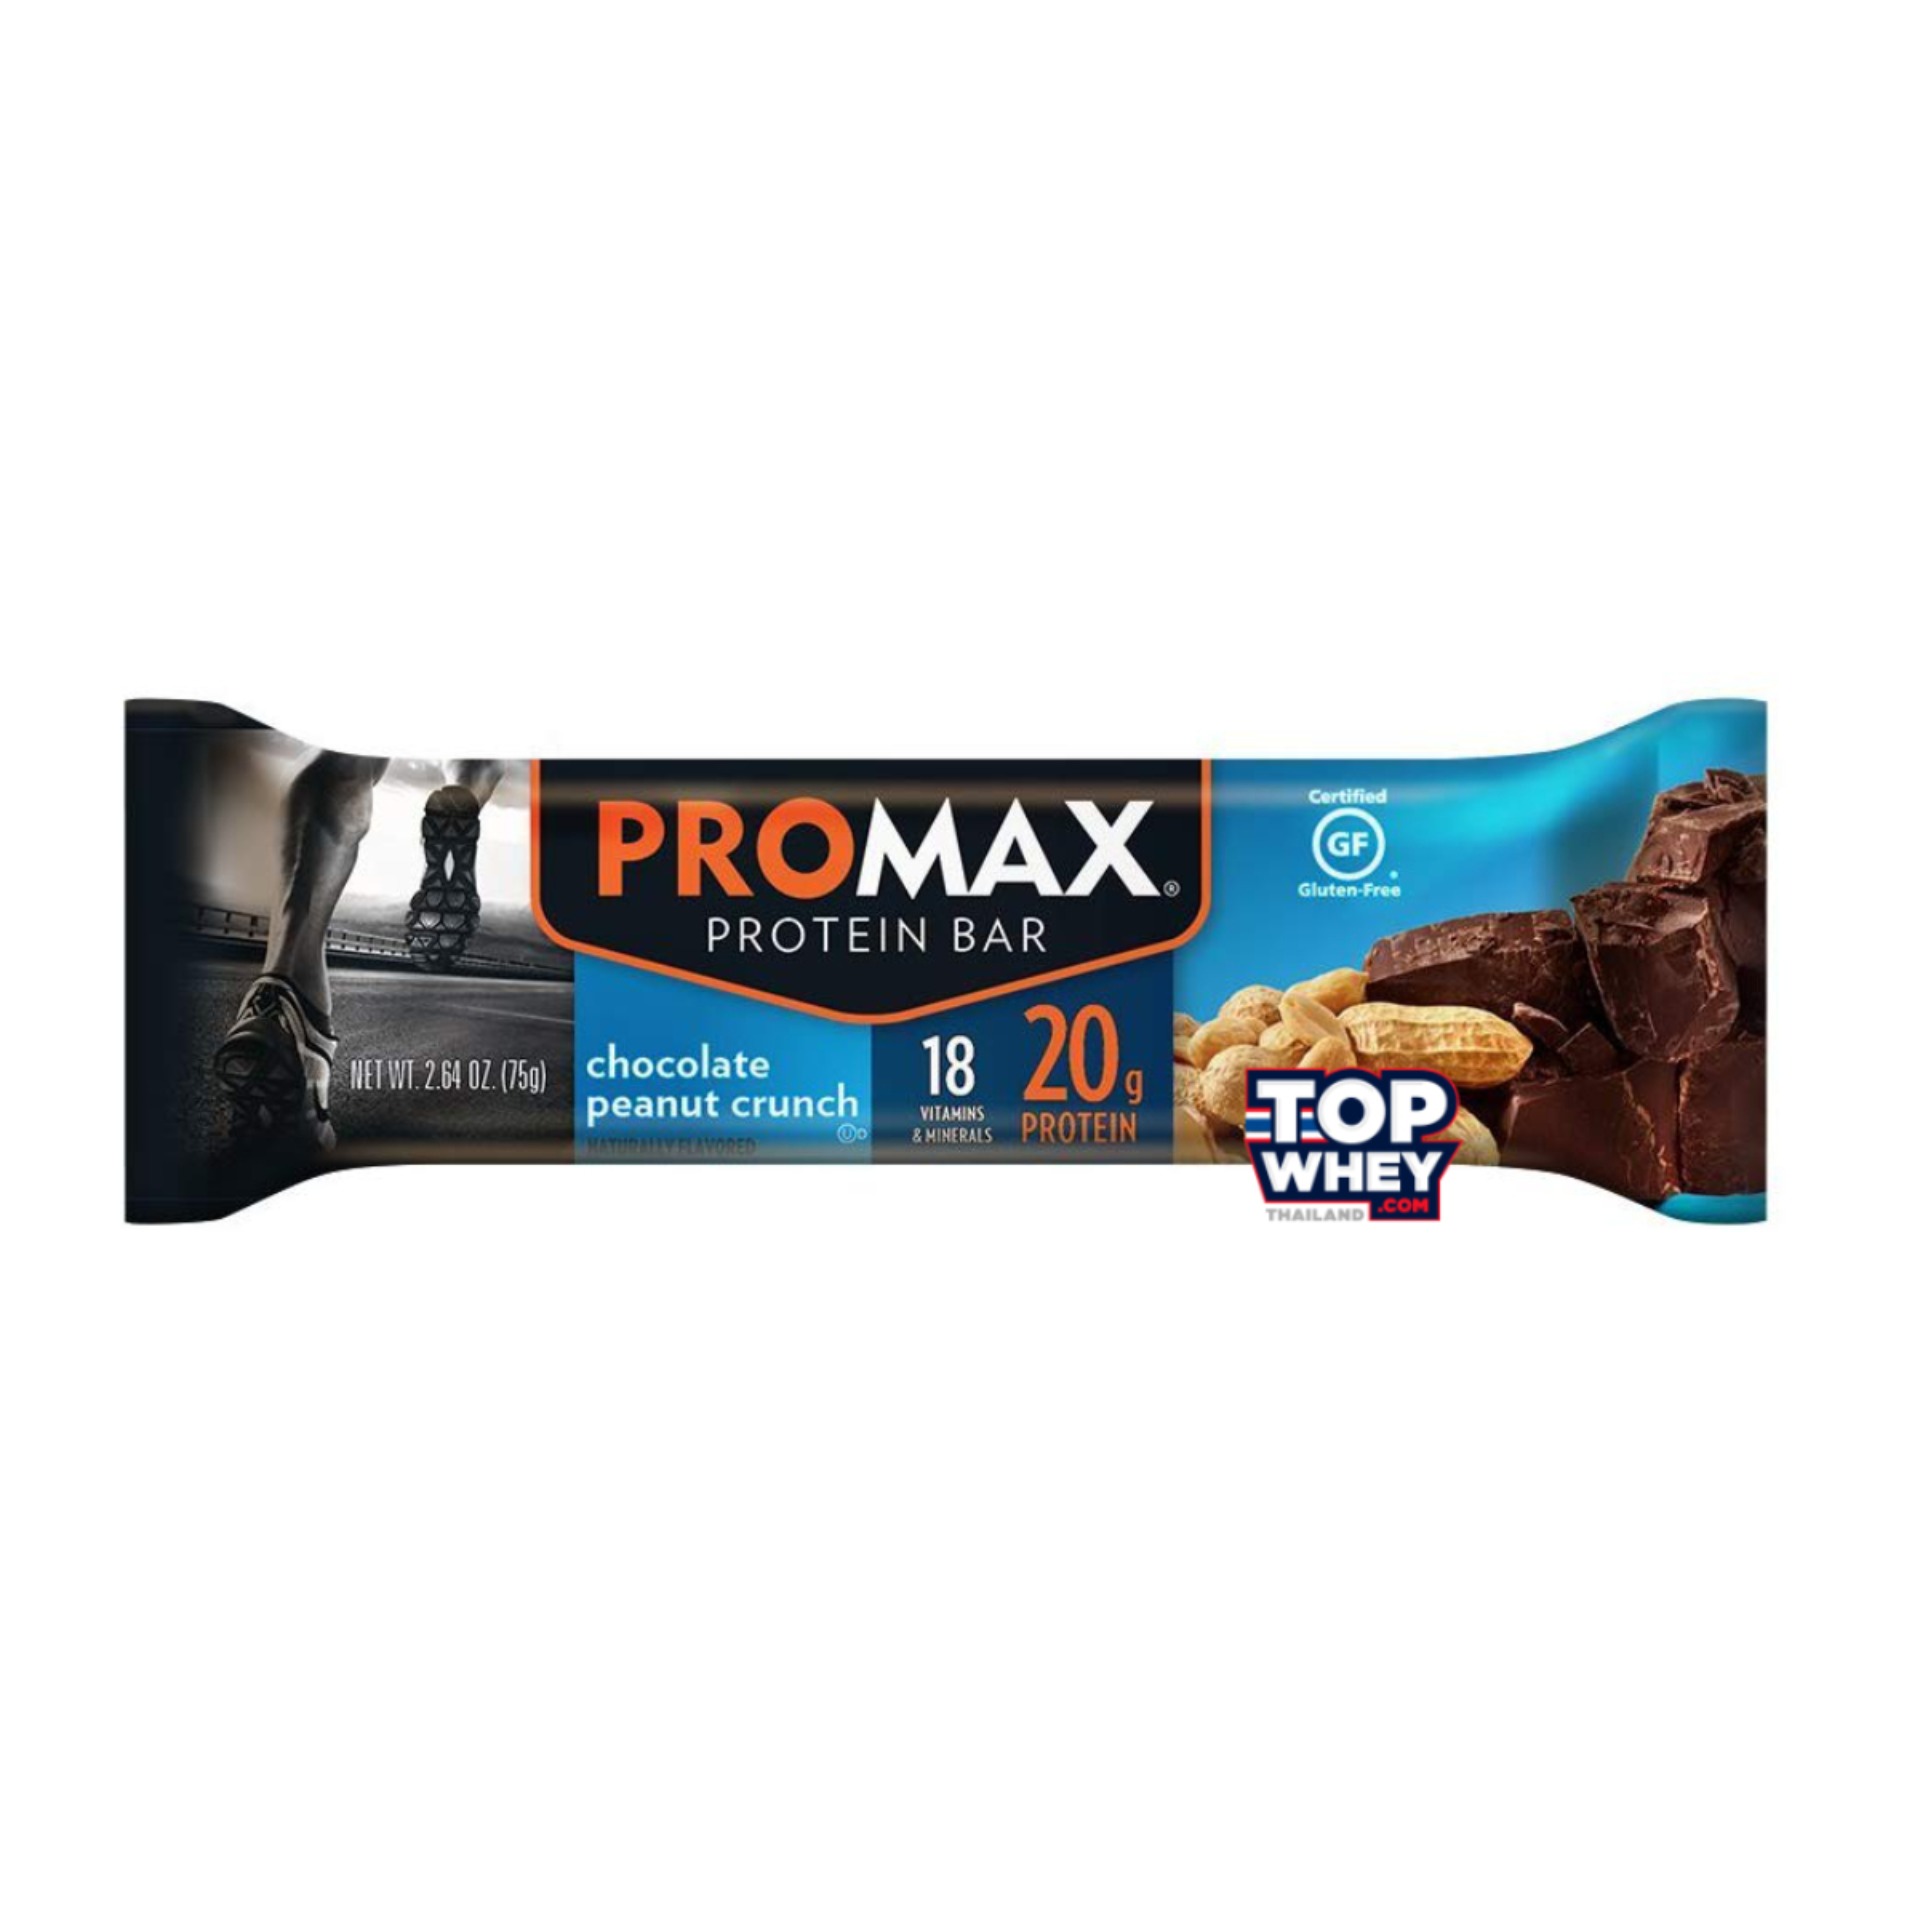 Promax Protein Bars - 1 Bar Chocolate Peanut Crunch  โปรตีนบาร์  มีส่วนผสมของเวย์โปรตีน  สามารถทานเล่น  หรือแทนมื้ออาหารได้  มีปริมาณของโปรตีนที่สูง